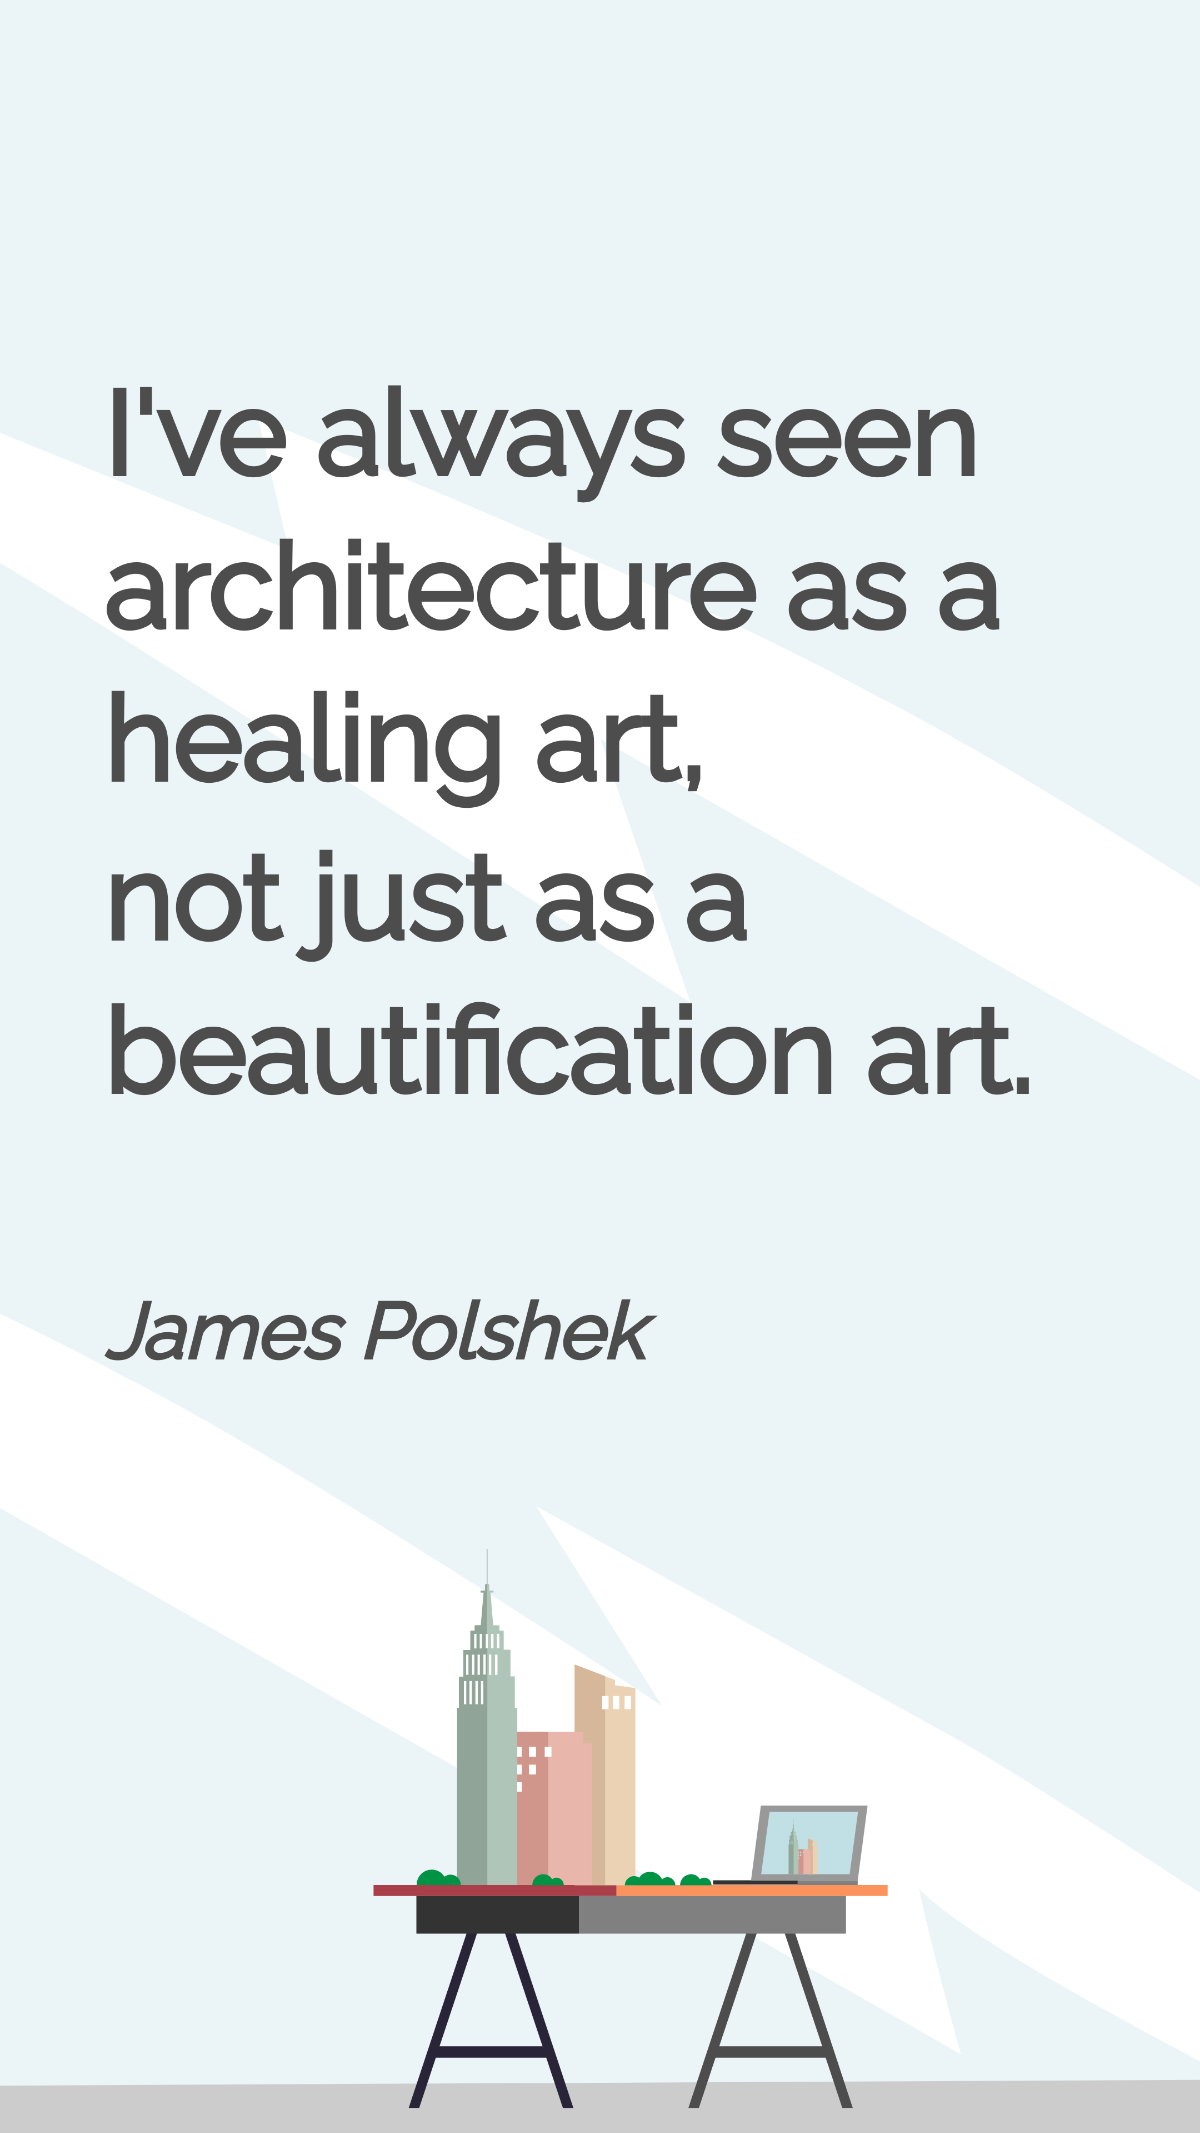 Free James Polshek - I've always seen architecture as a healing art, not just as a beautification art. Template